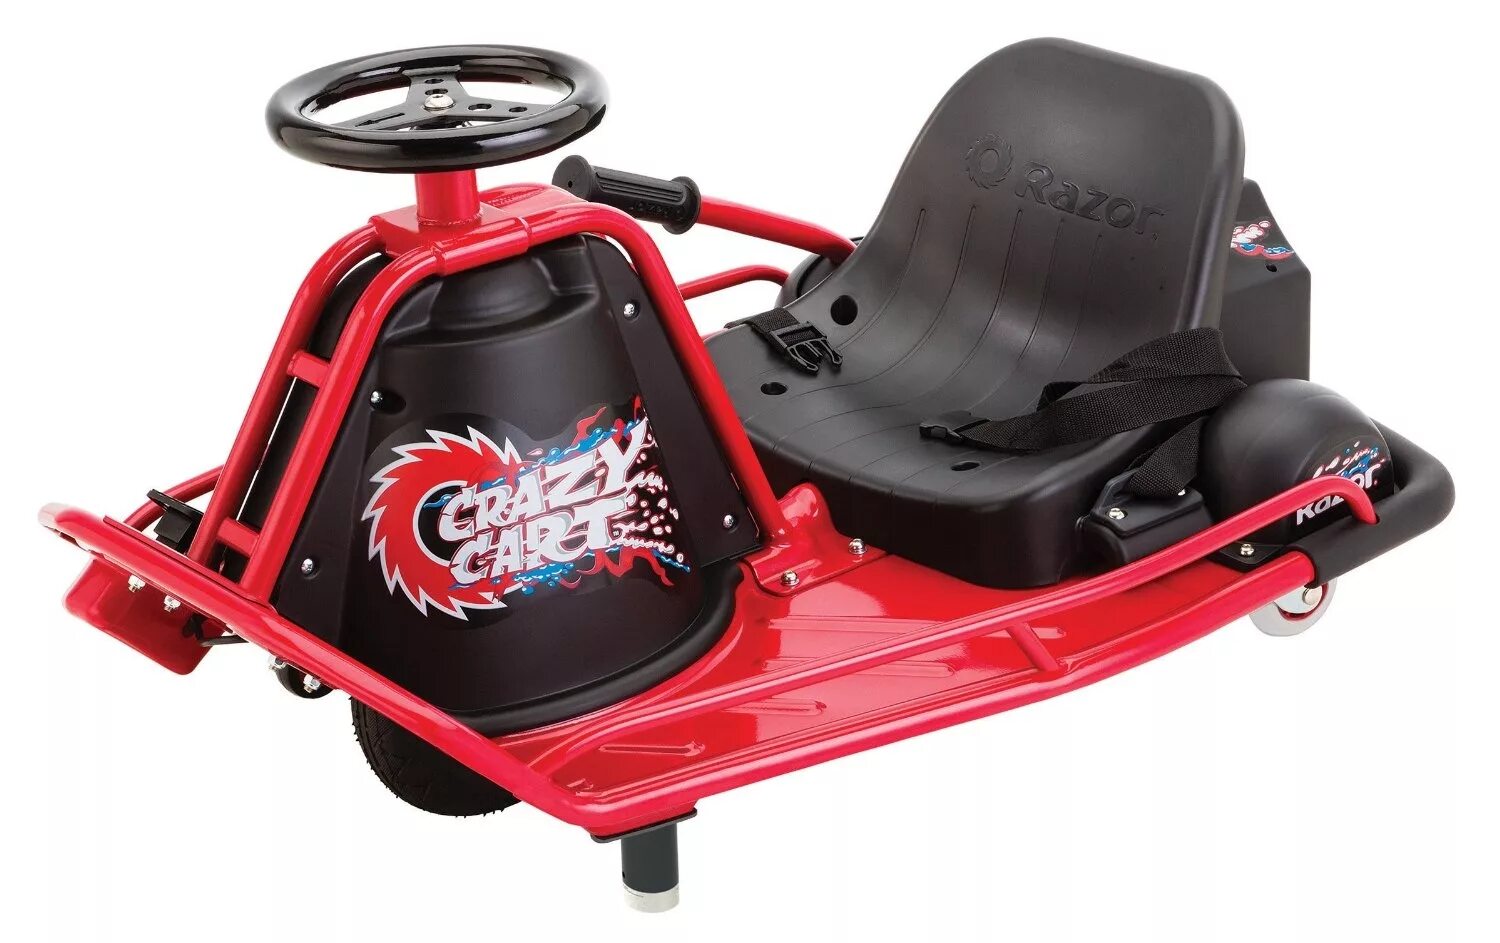 Дрифт картинг Razor. Crazy Cart дрифт картинг. Электросамокат Razor дрифт-карт Razor "Crazy Cart 2015",электрический. Razor Crazy Cart 2015 красный.